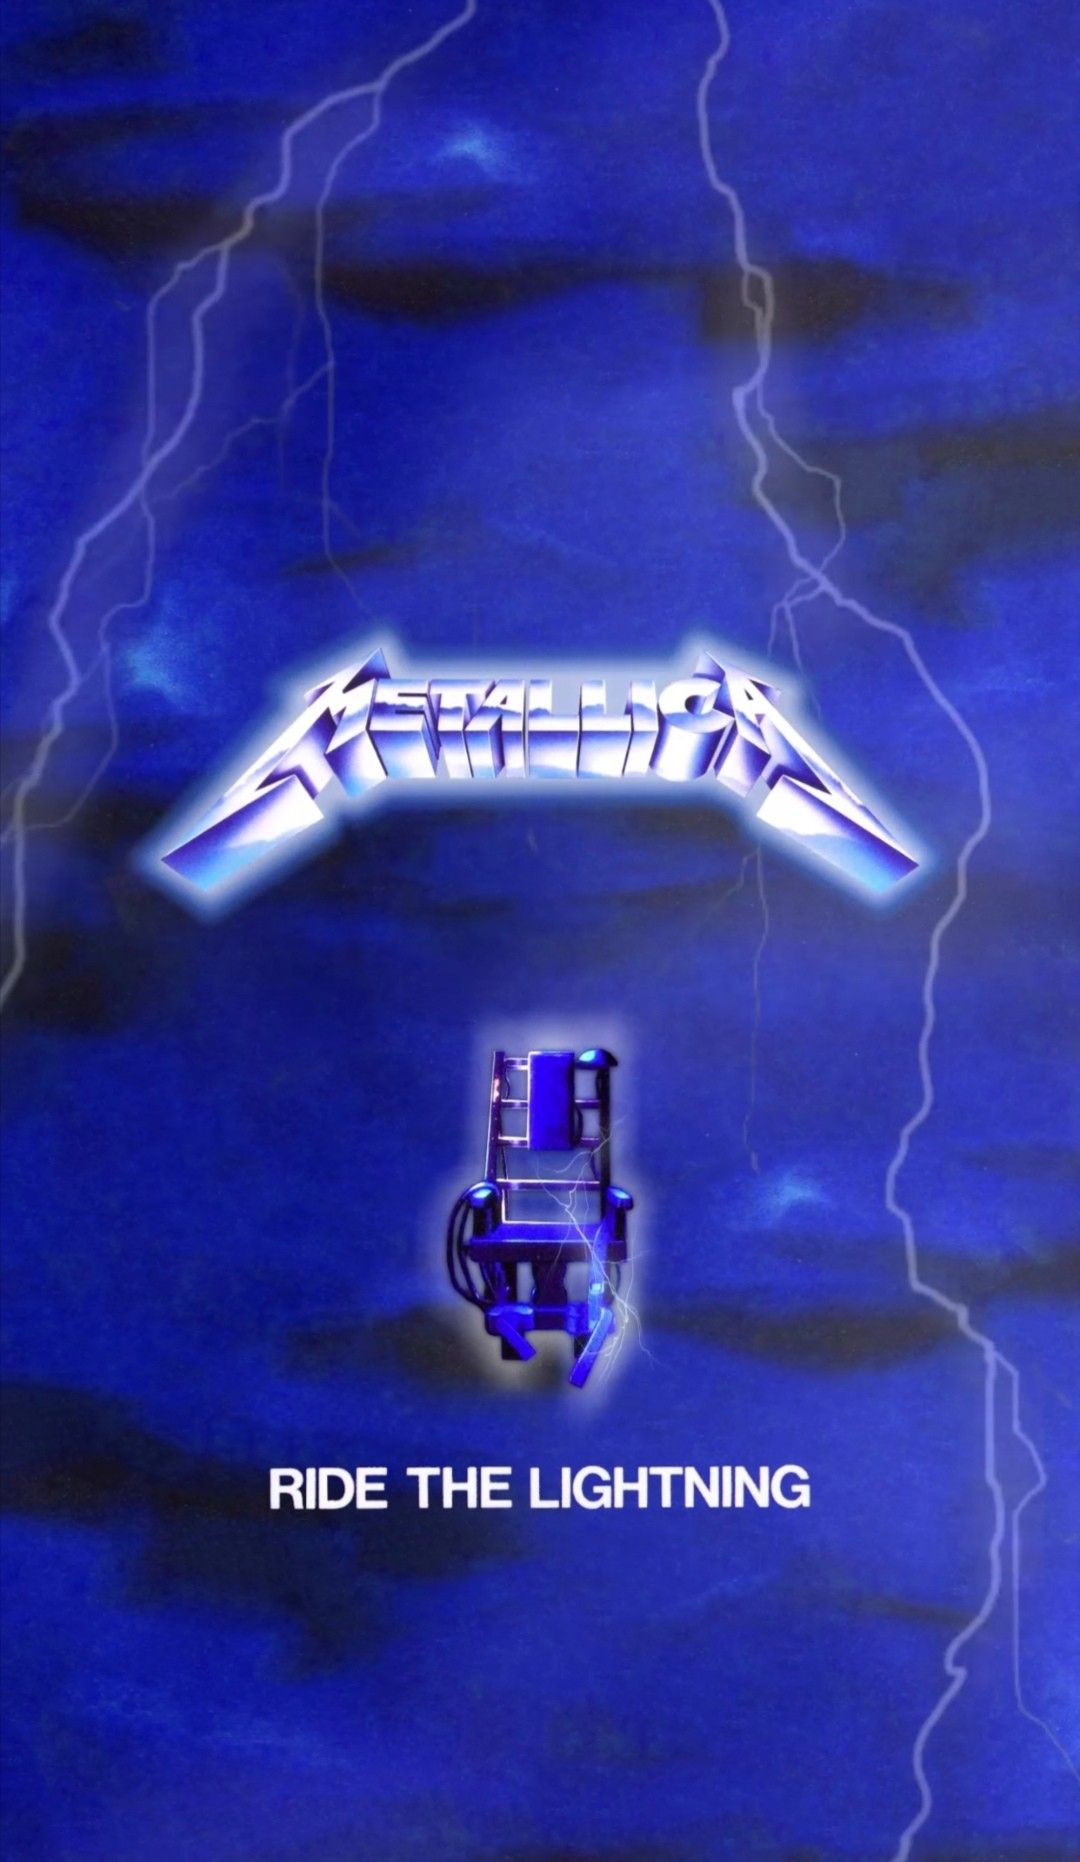 Metallica ride the lightning album cover wallpaper fondo iPhone. Ride the lightning, Metallica album covers, Metallica albums